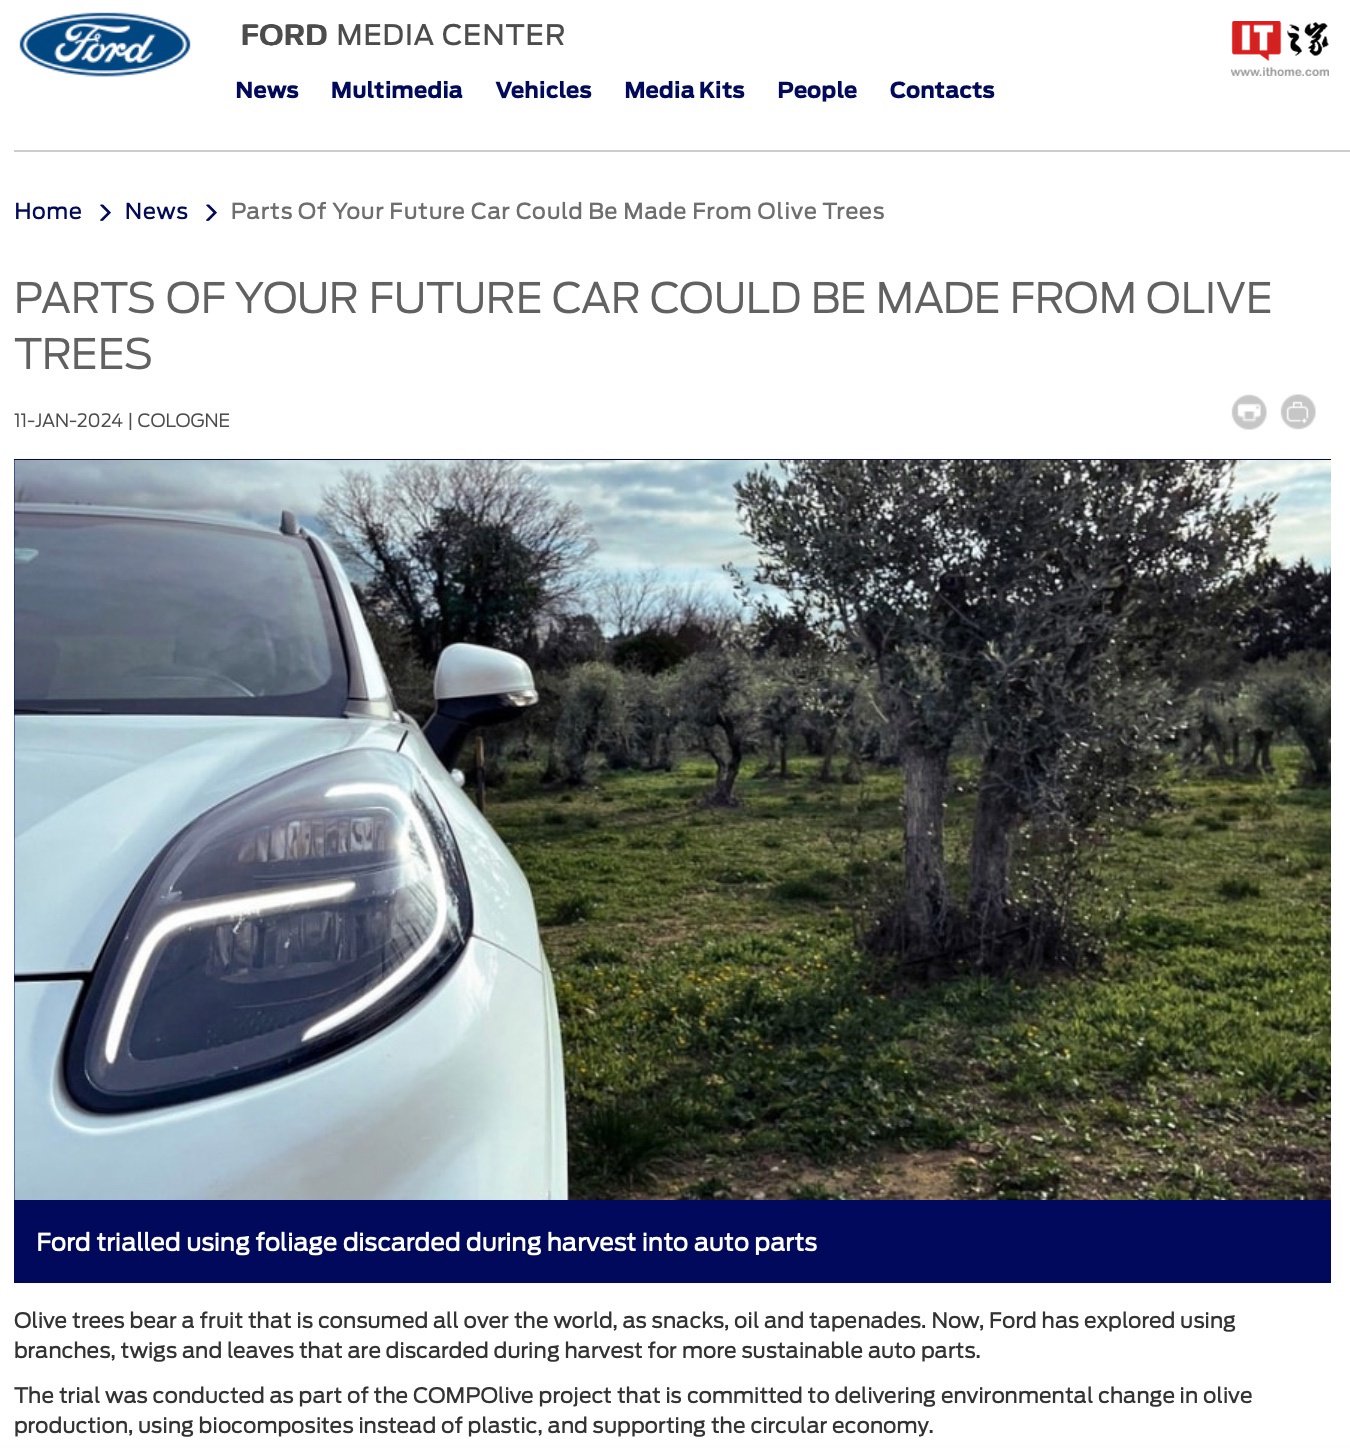 利用橄欖樹枝及回收塑料製造汽車零件，福特公布 COMPOlive 研究項目